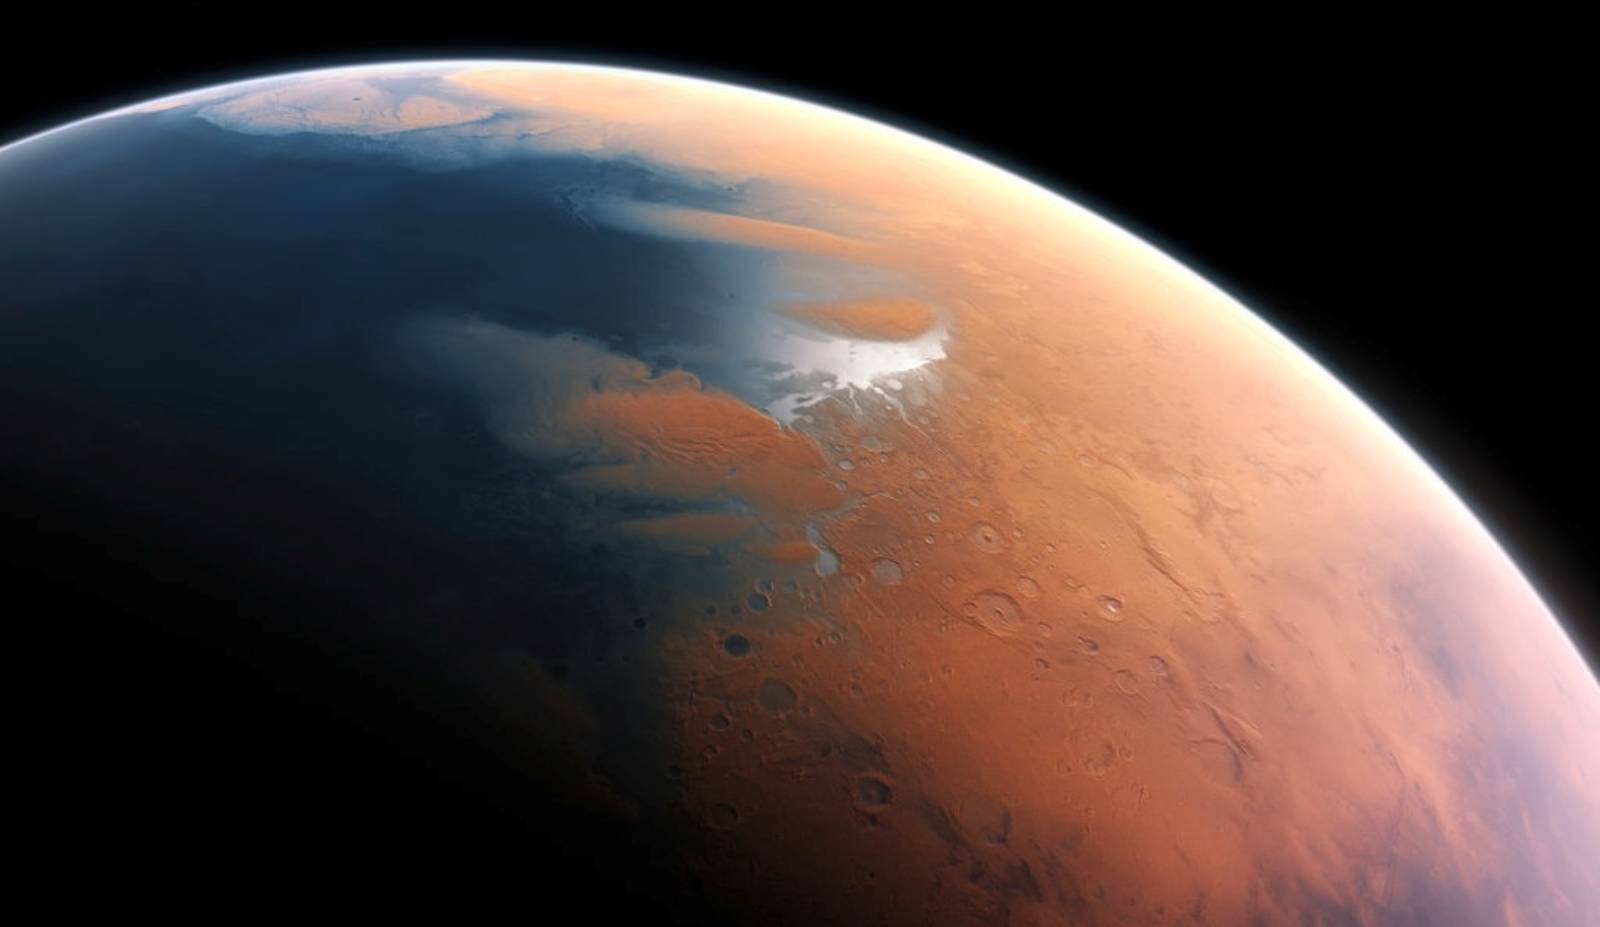 Dziwna planeta Mars